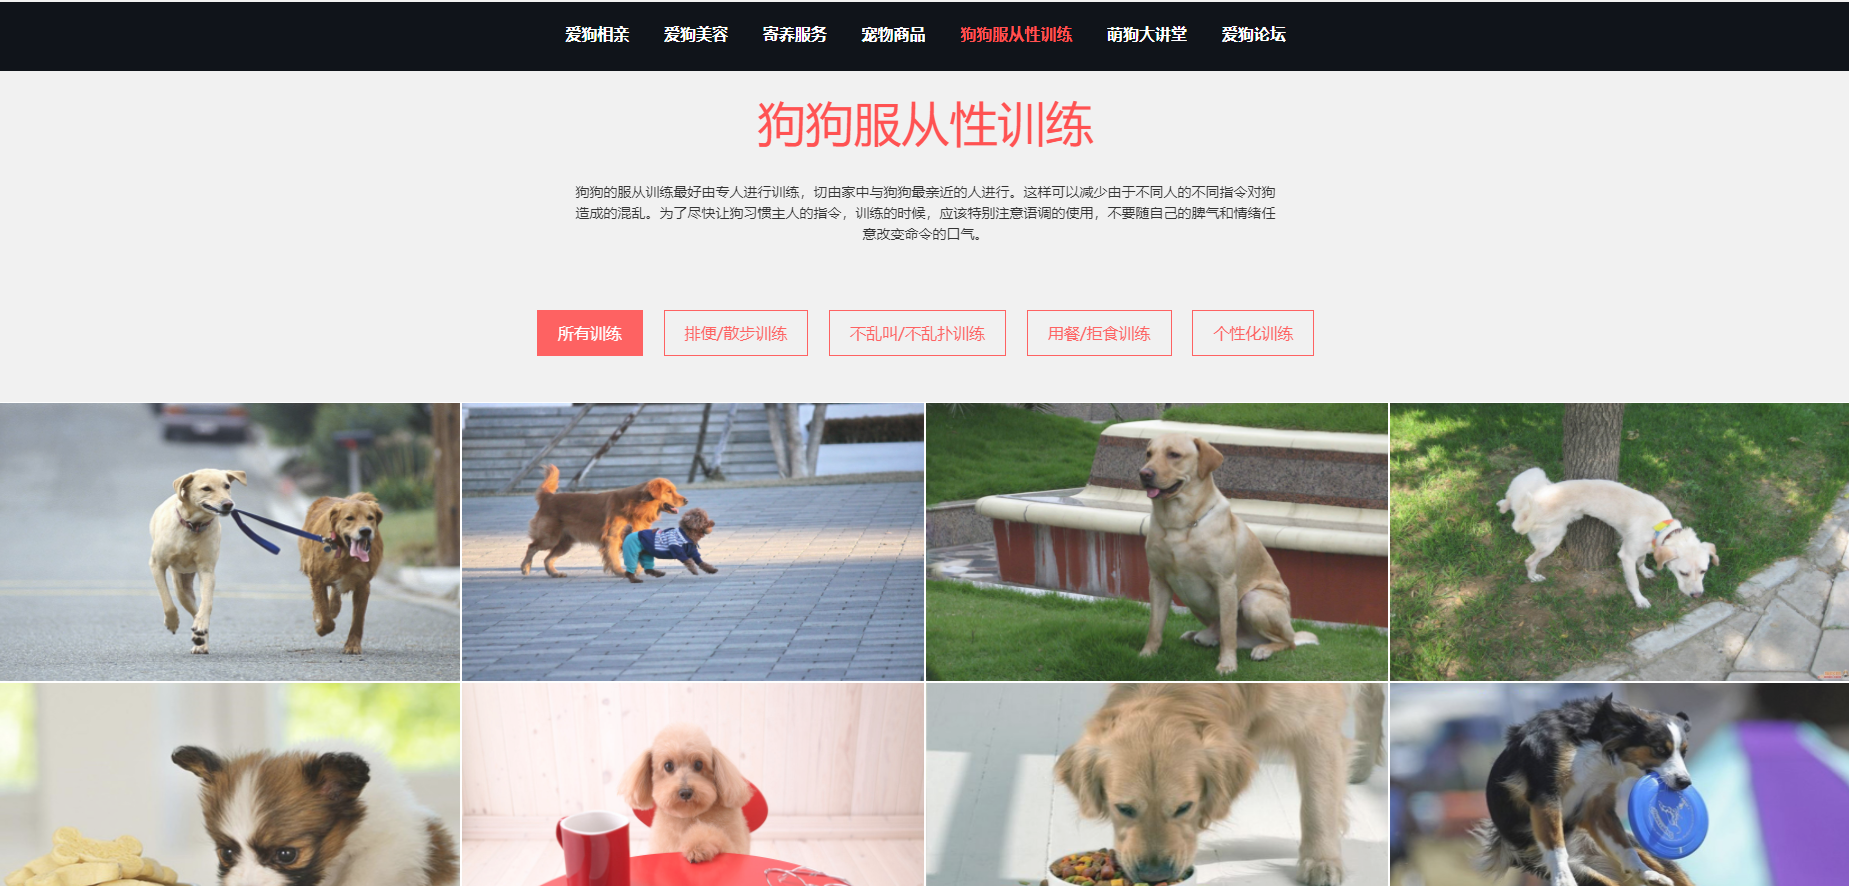 基于HTML5,DIV CSS实现的宠物狗个性化服务网站前端 静态网页毕业设计 web前端毕设